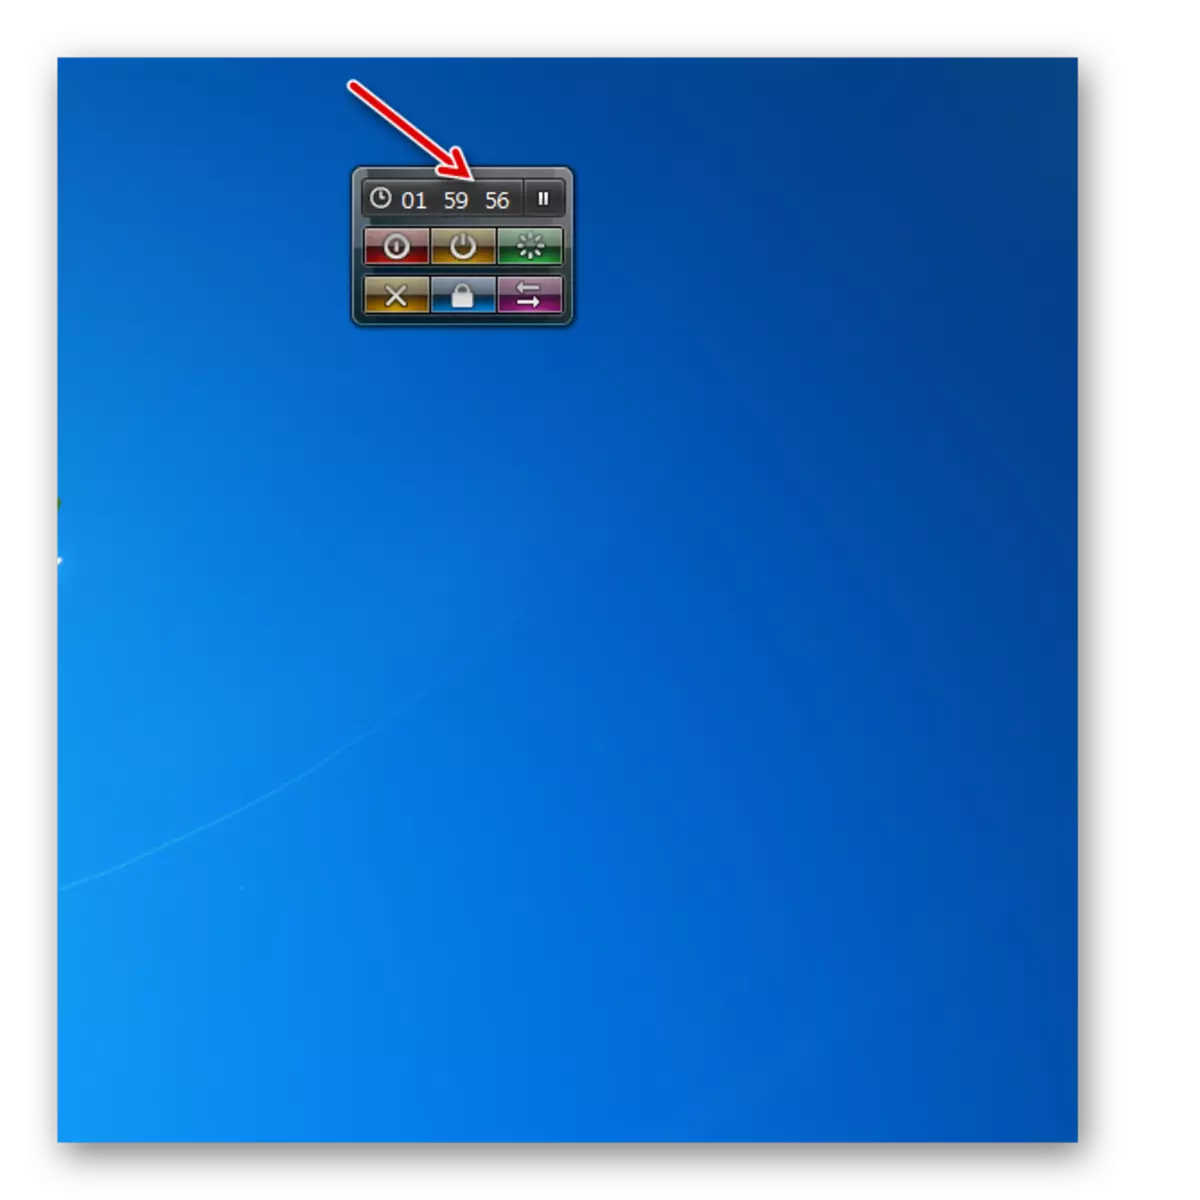 الكمبيوتر افصل الموقت بدأت في إيقاف تشغيل النظام أداة في ويندوز 7